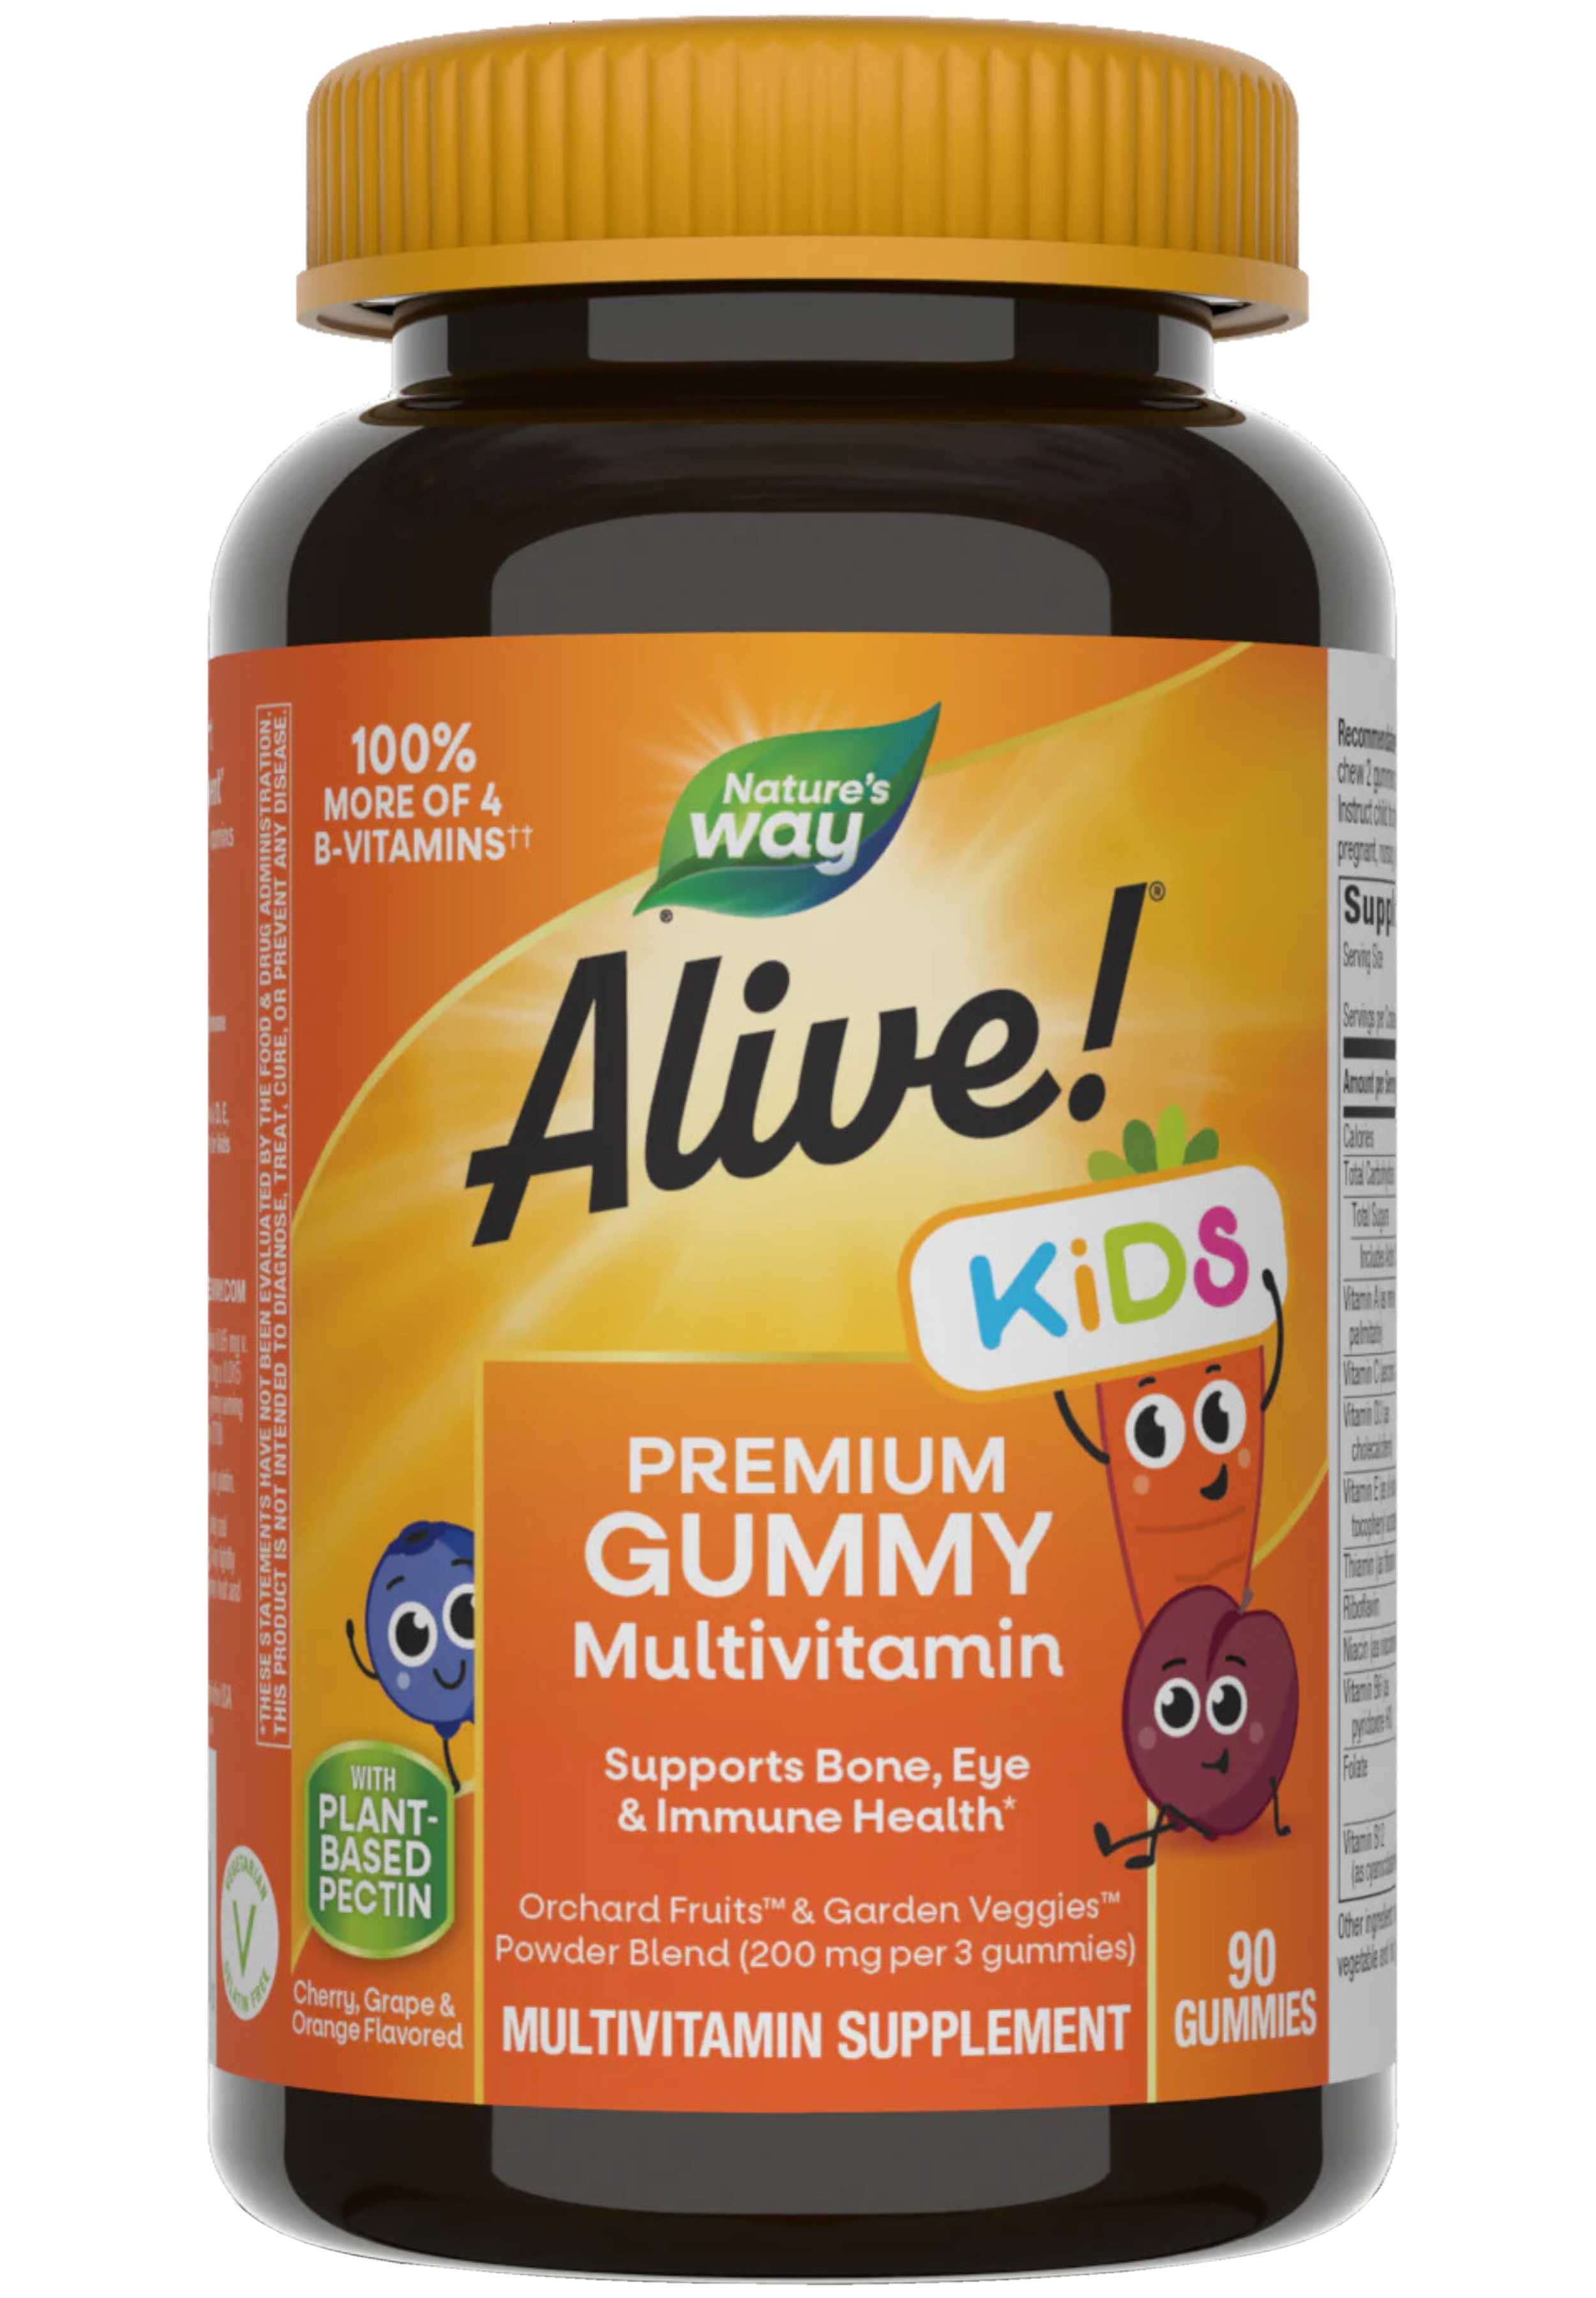 Nature's Way Alive Kids Premium Gummy Multivitamin (Formerly Alive Multi-Vitamin Gummies For Children)